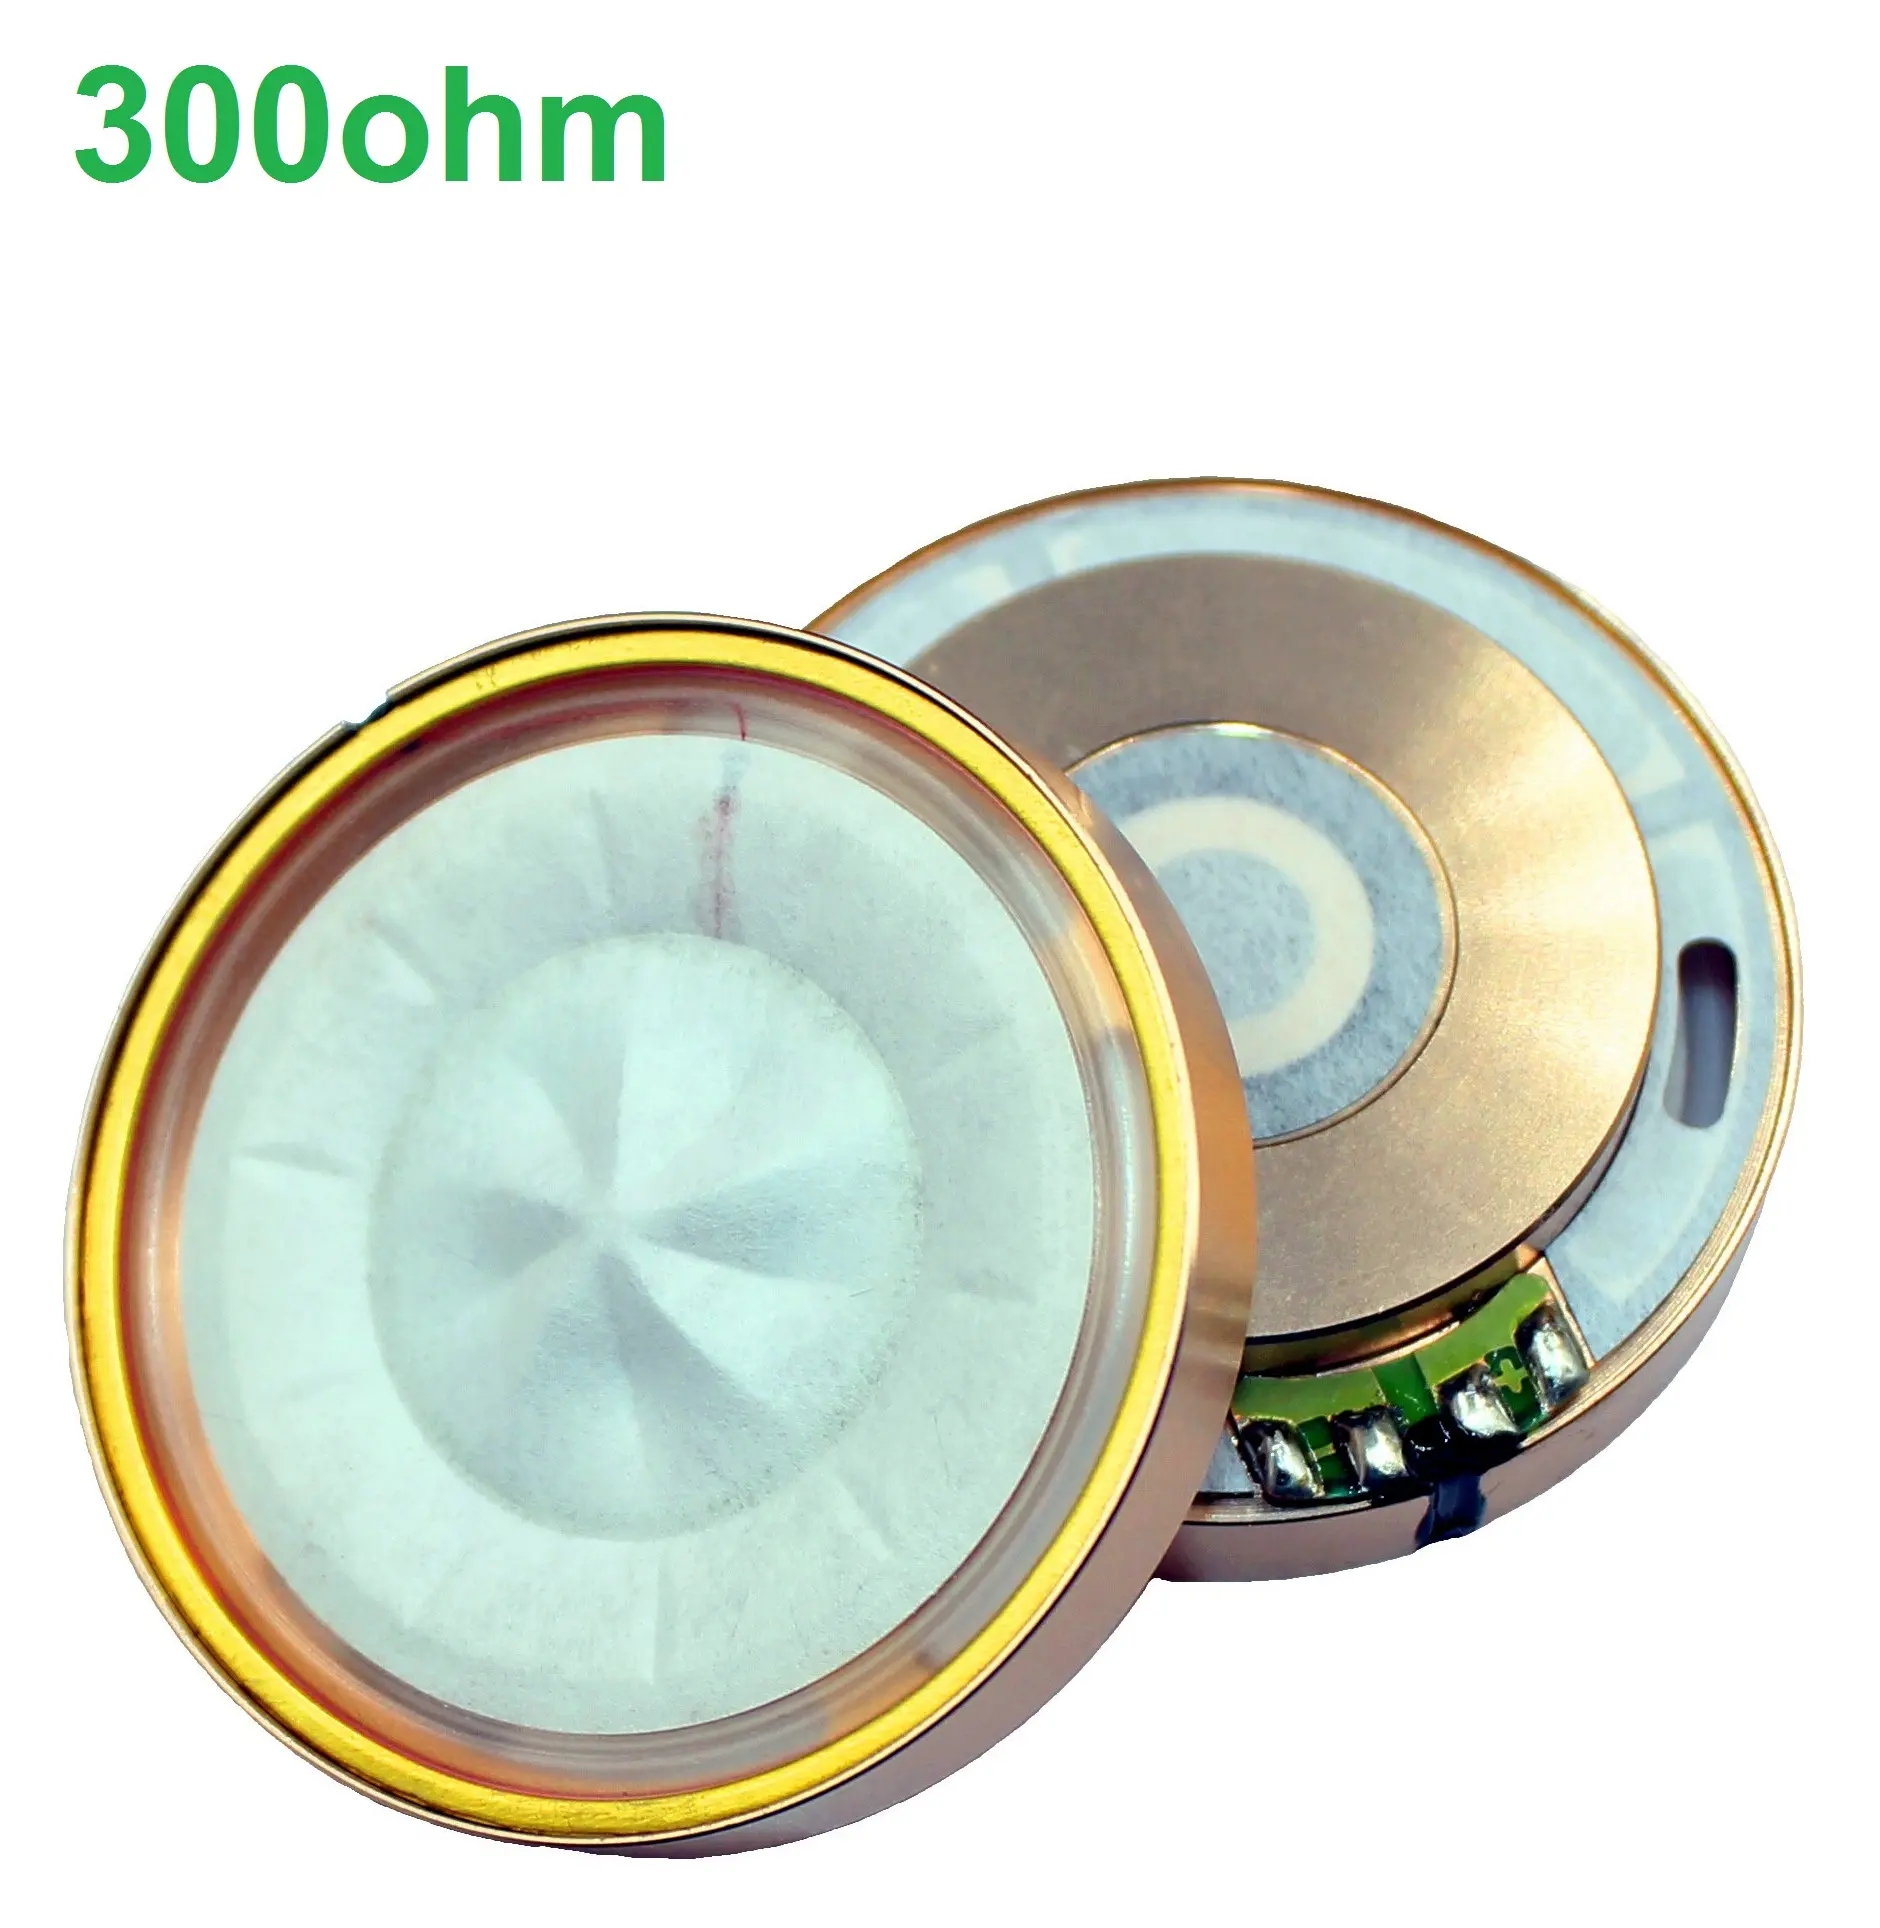 Headphone Hifi kualitas tinggi 50mm driver dual magnet neodymium N52 diafragma nanofiber material komposit 300ohm speaker